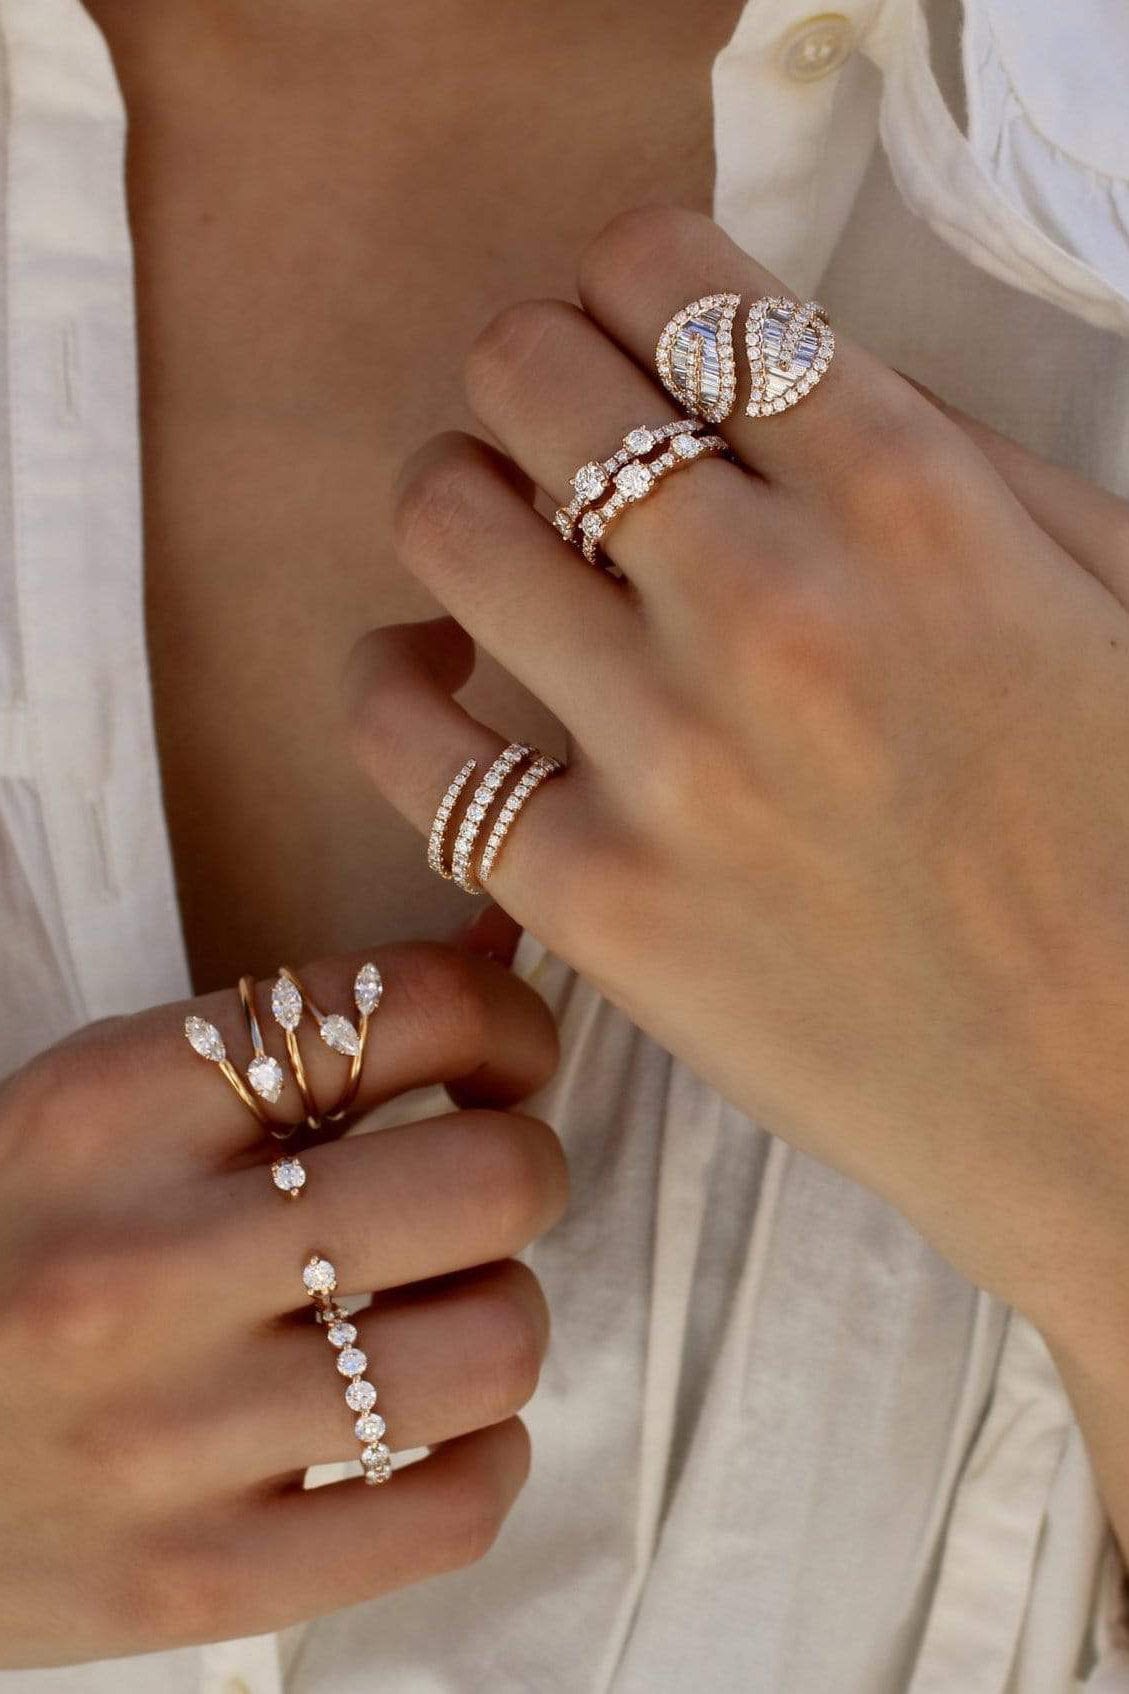 ANITA KO-Rose Gold Collins Diamond Ring-ROSE GOLD